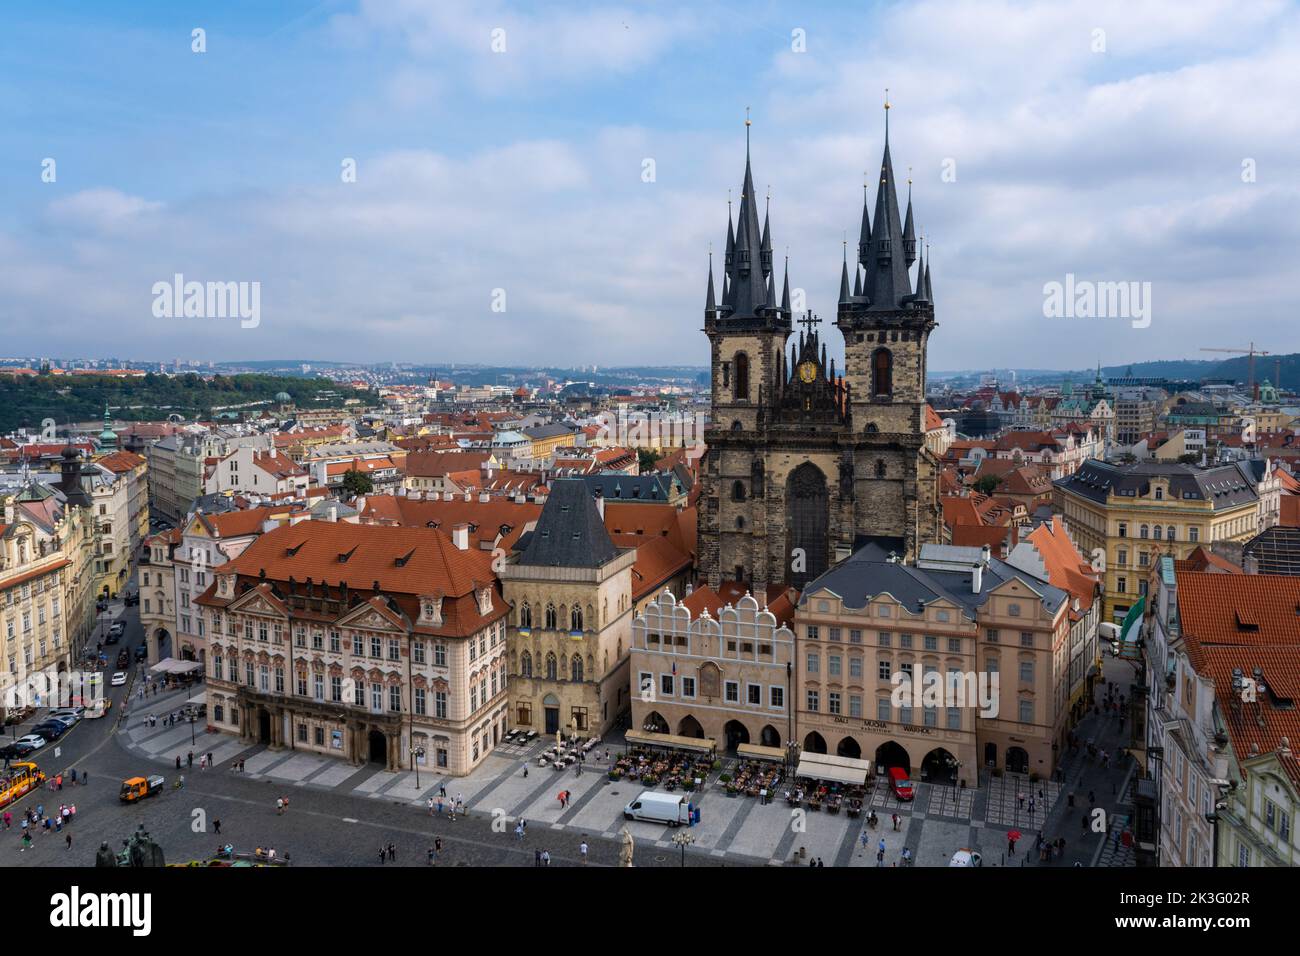 Praga, República Checa - 5 de septiembre de 2022: Vista aérea panorámica de Praga desde el Ayuntamiento Antiguo, Iglesia de Nuestra Señora antes de Tyn Foto de stock